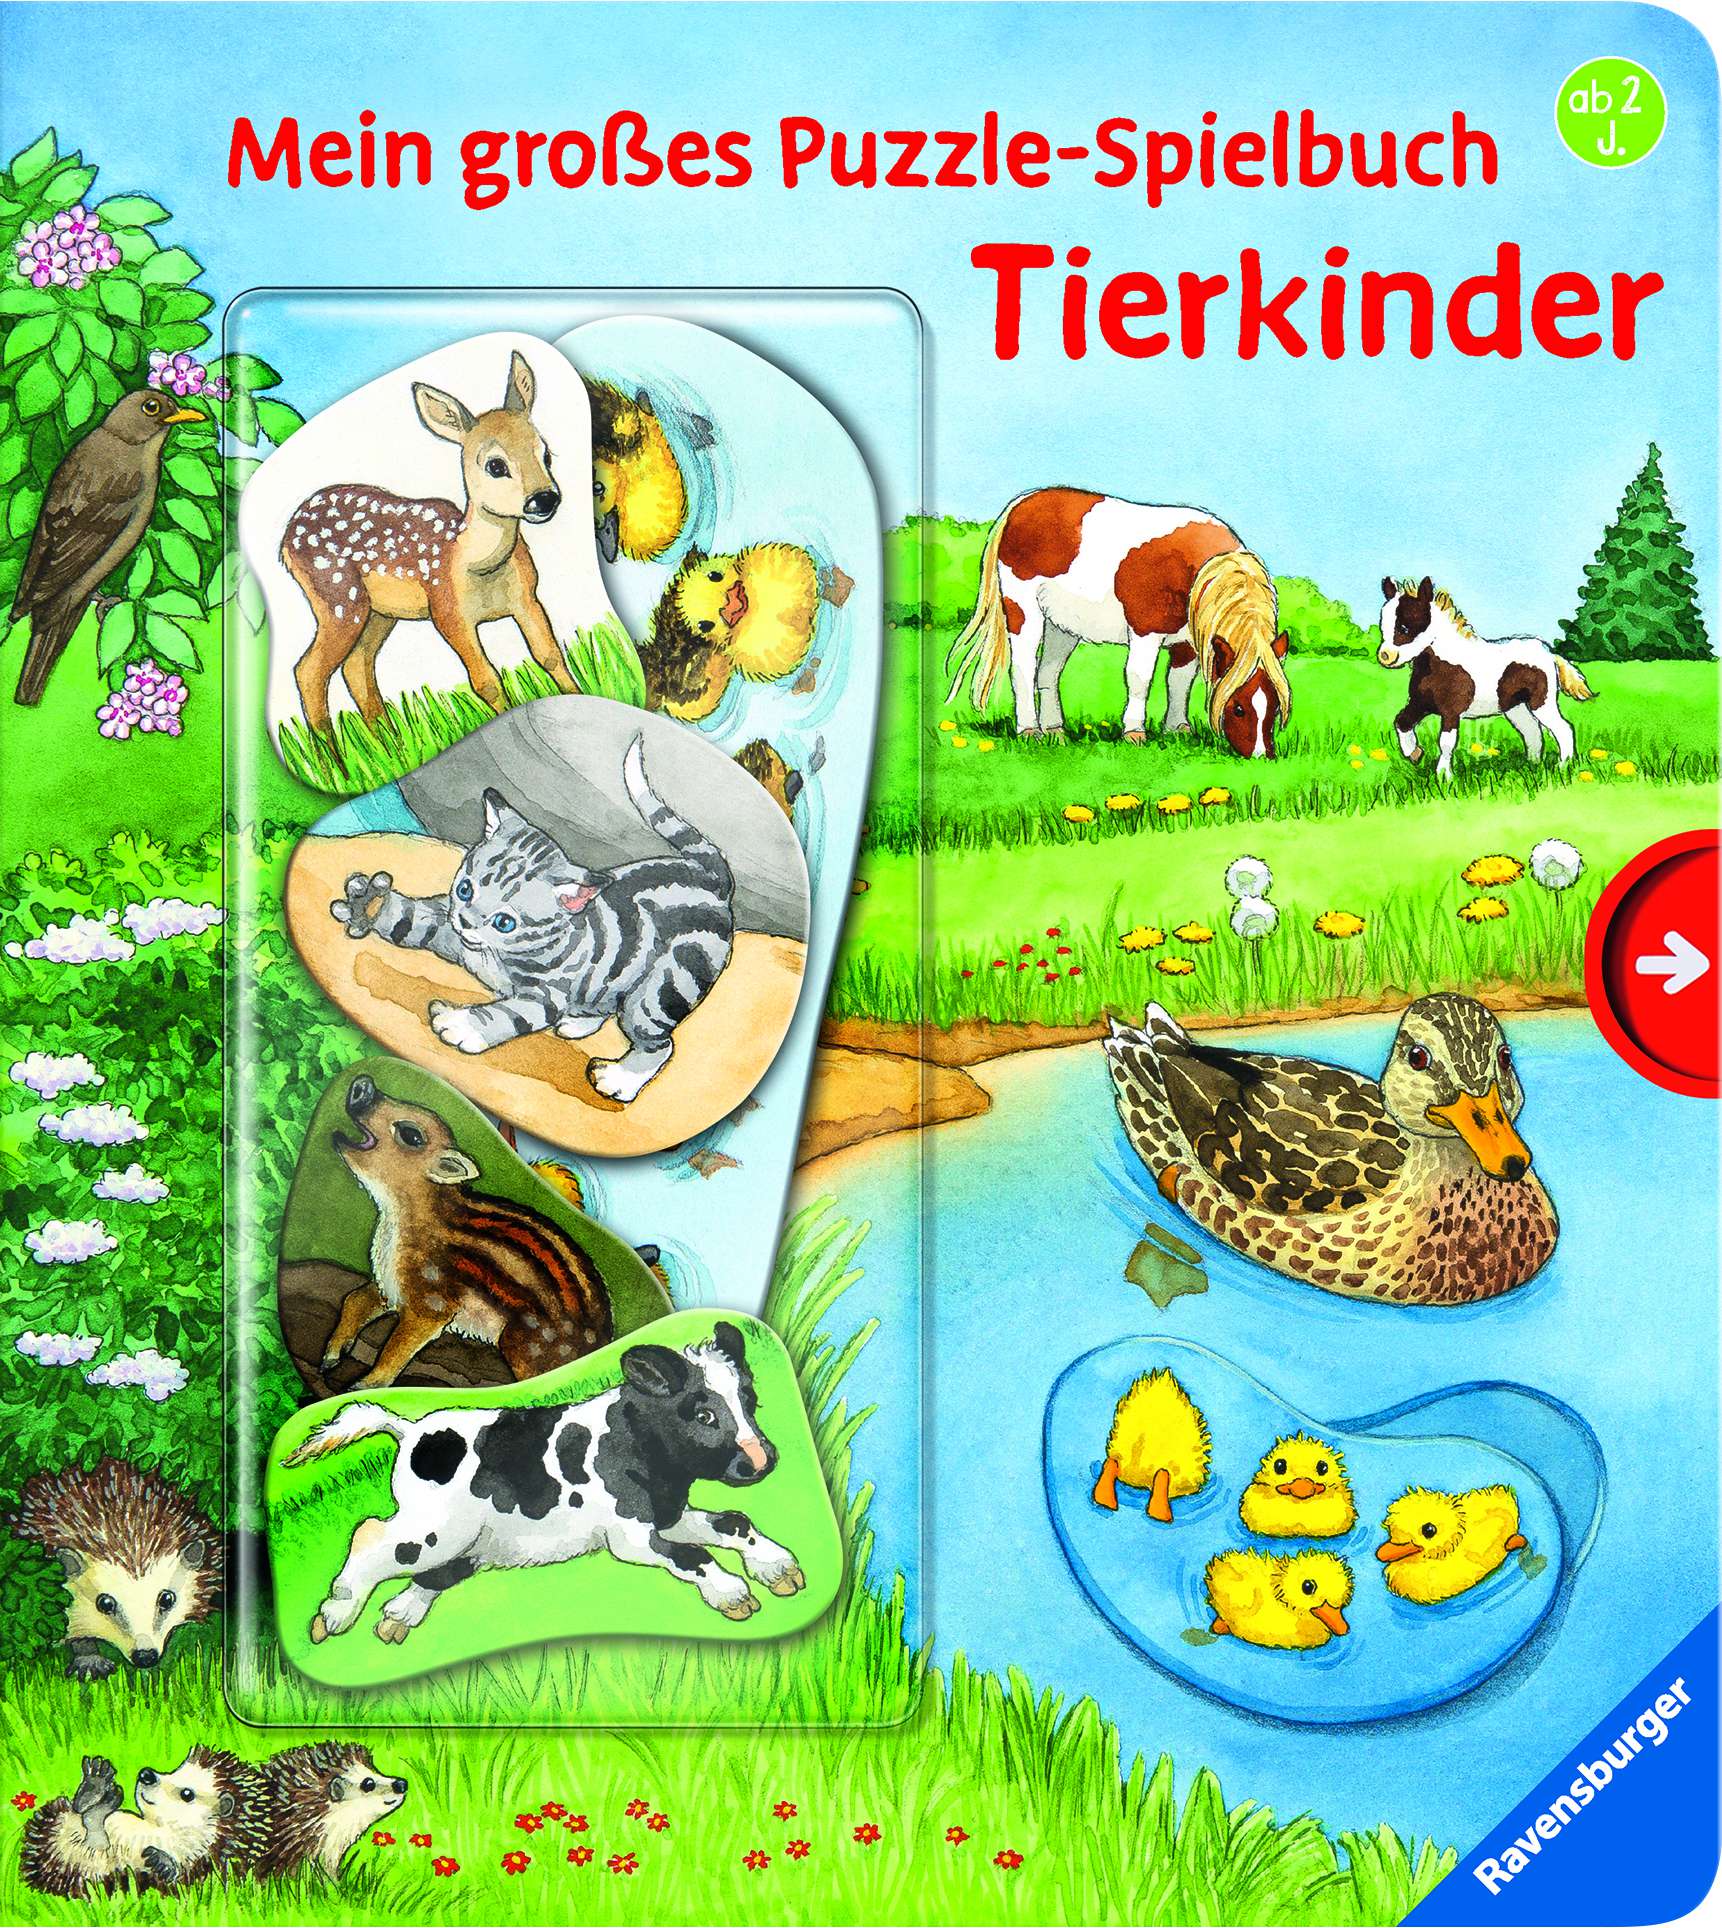 Frauke NahrgangMein großes Puzzle-Spielbuch: Tierkinder